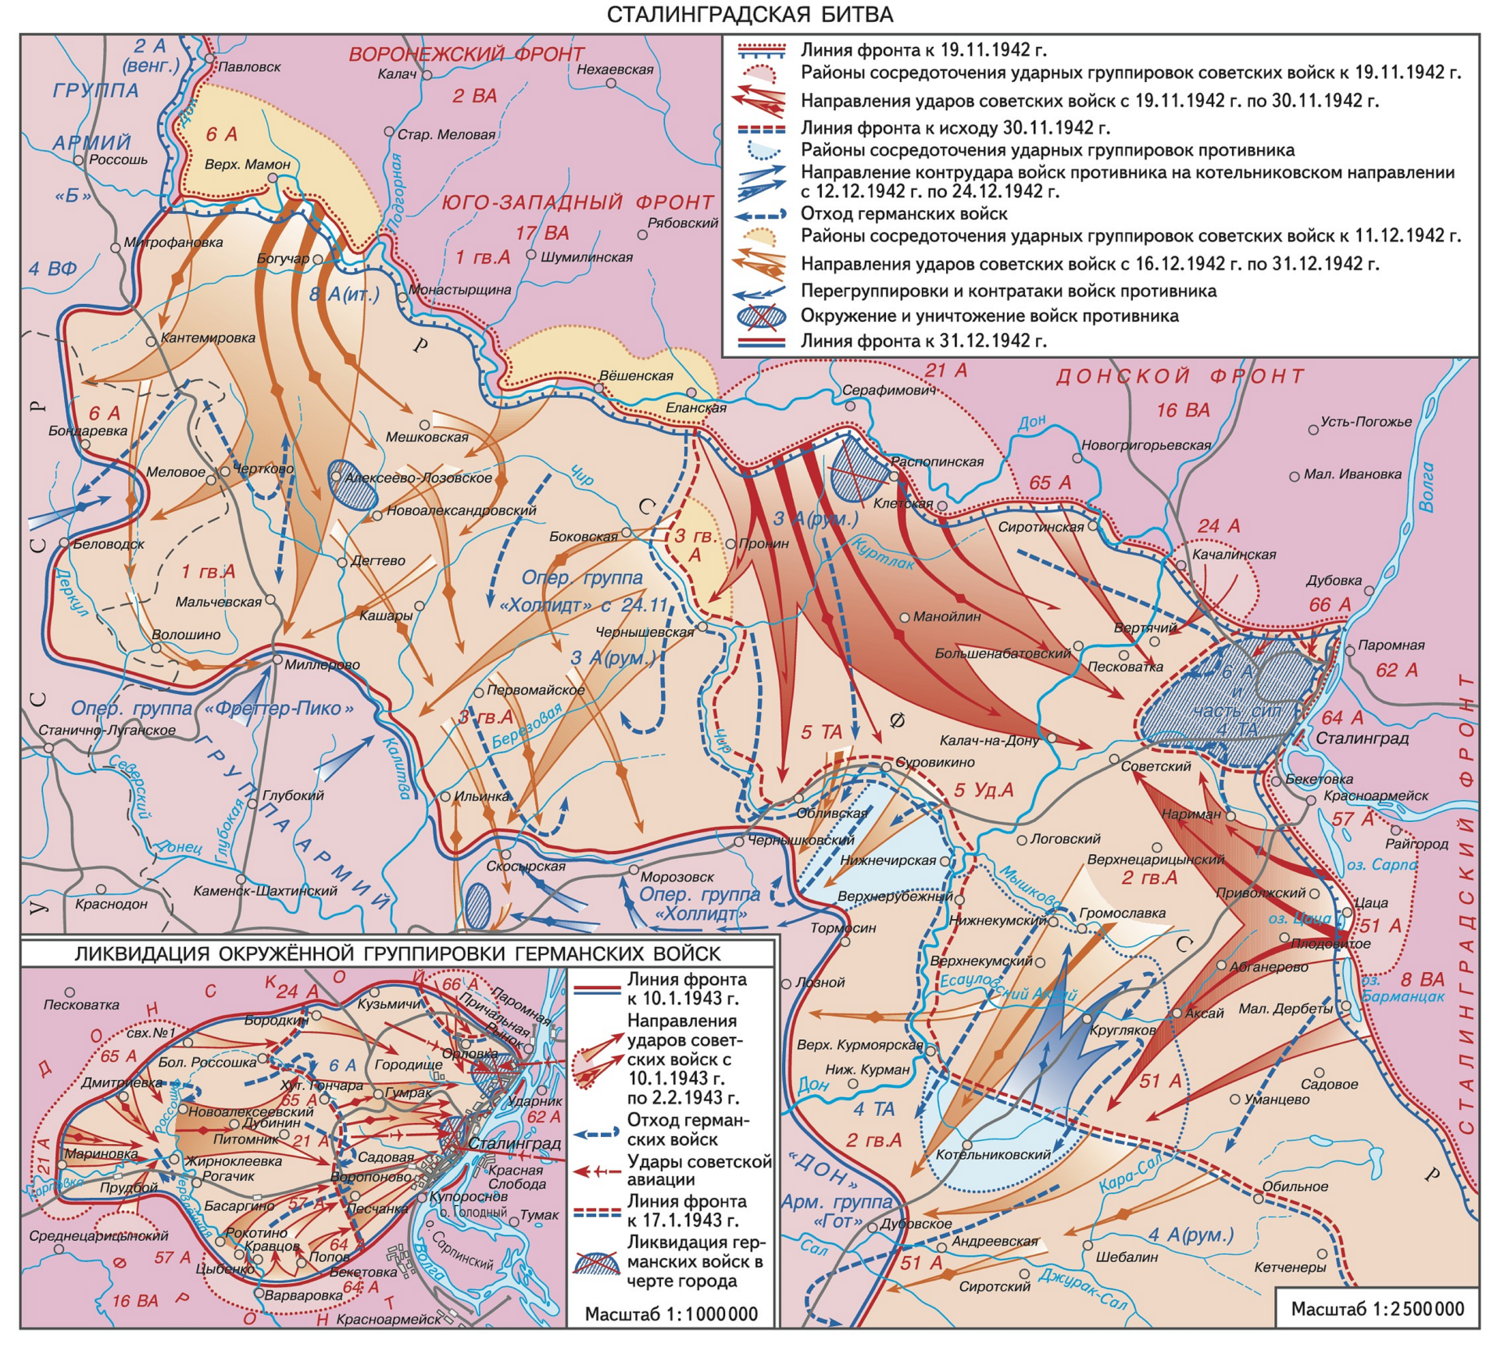 План наступления советских войск под сталинградом. Карта Сталинградской битвы 1942-1943. Карта Сталинградской битвы 1942 года. Сталинградская битва (17 июля 1942 — 2 февраля 1943 года) карта.